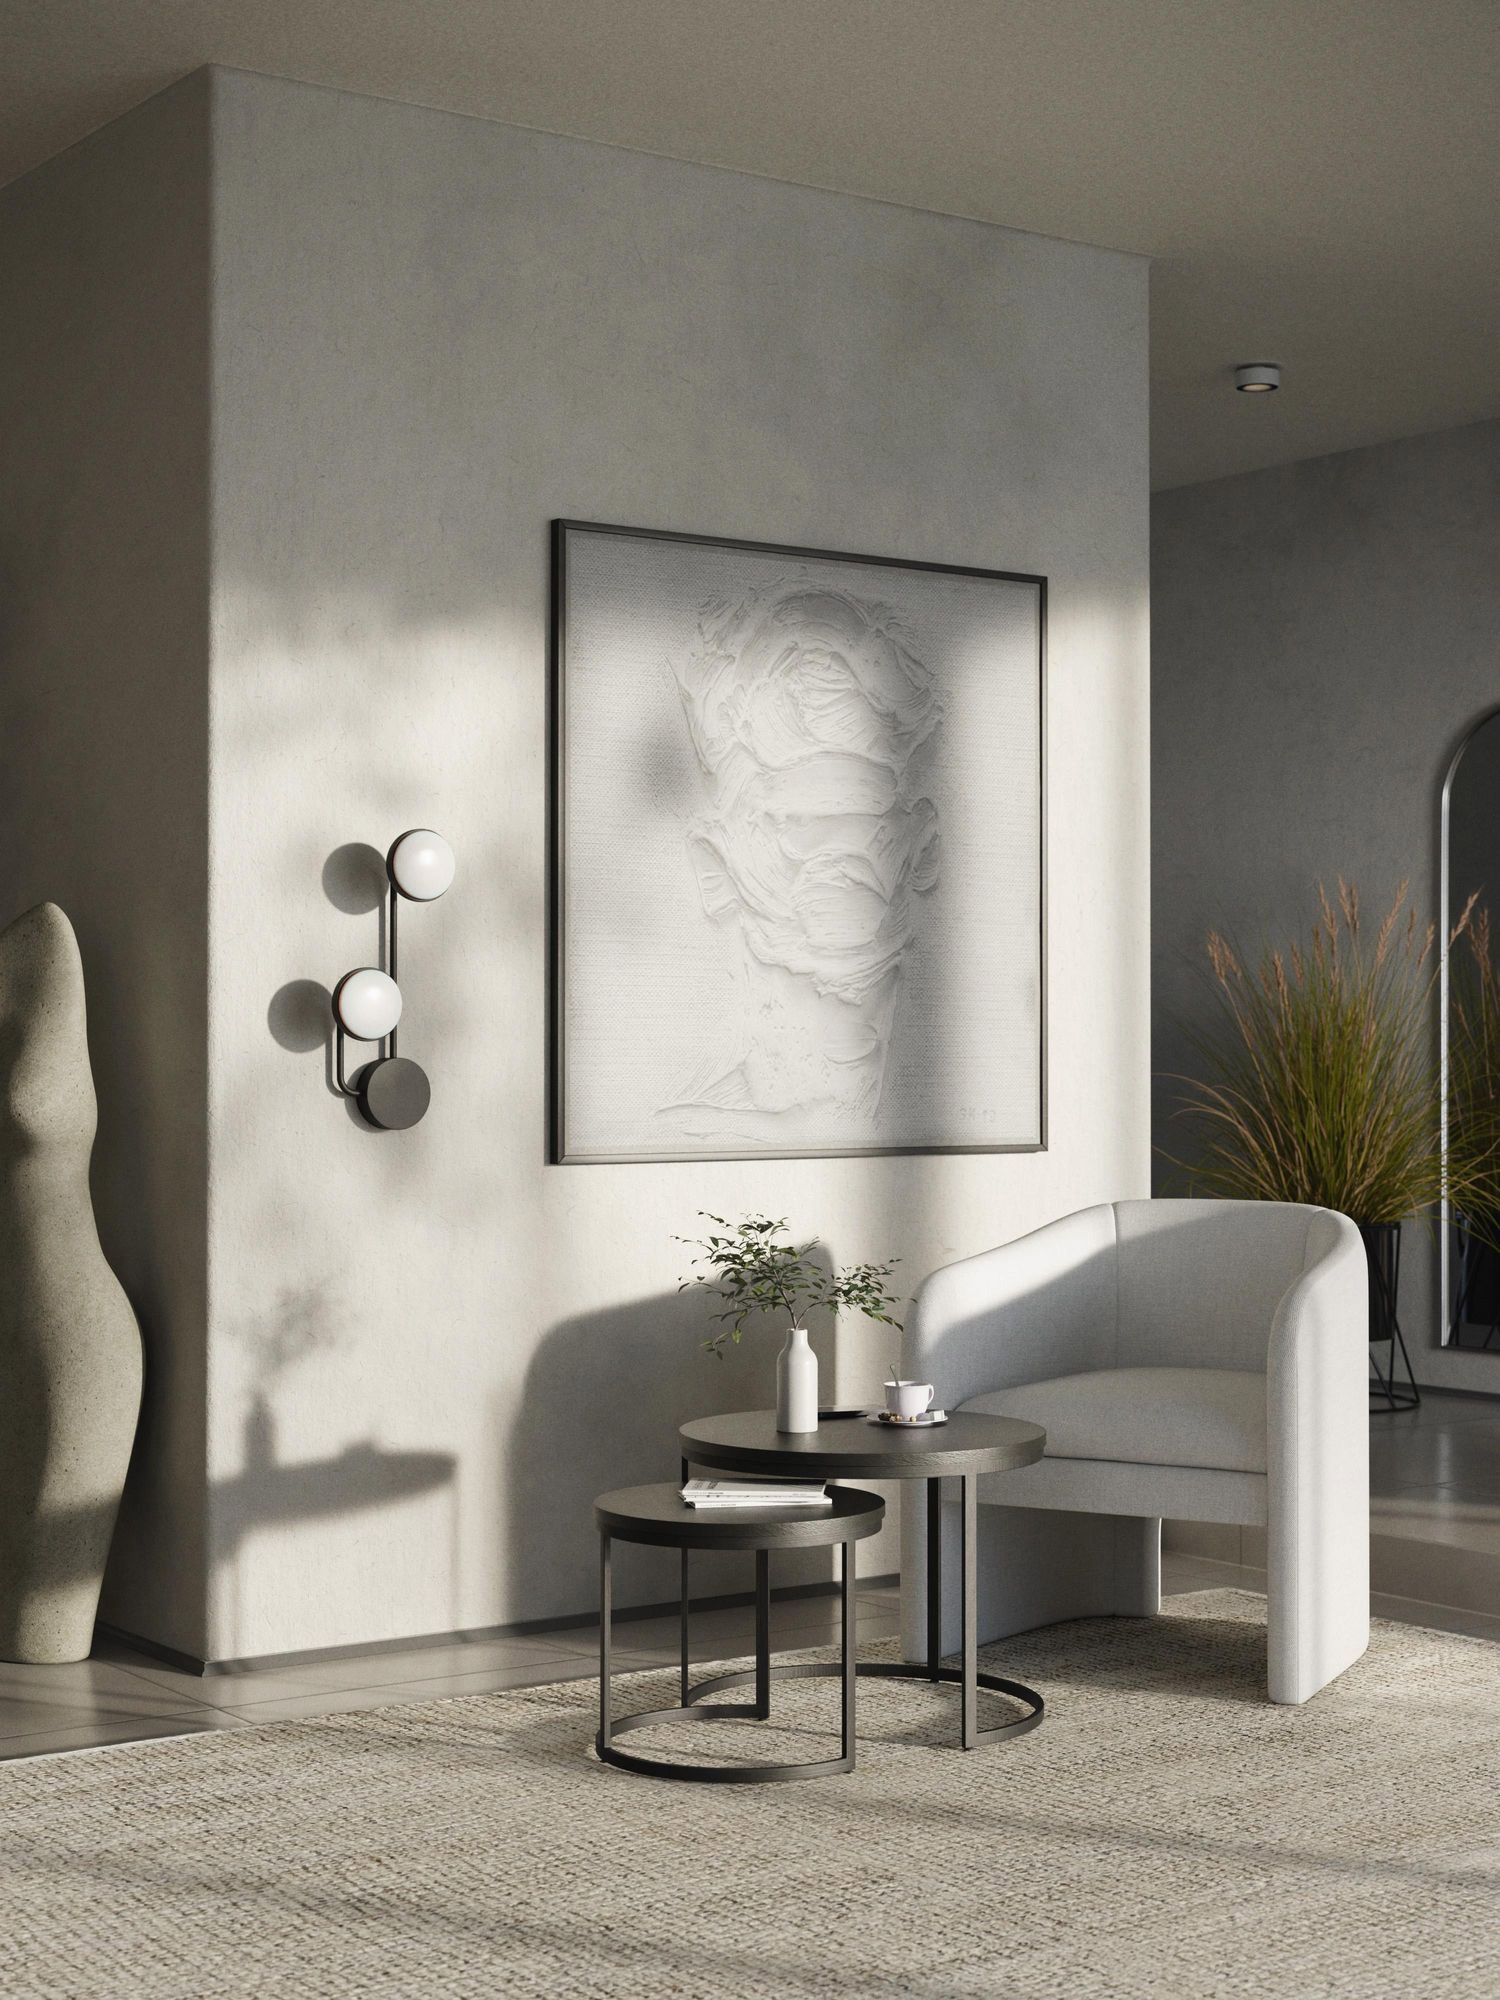 Habitación con luz natural y aplique de luces led en la pared para aprovechar la decoración vertical. También vemos un cuadro abstracto en tonos blancos y grises y un sillón con una mesita de centro negra. 